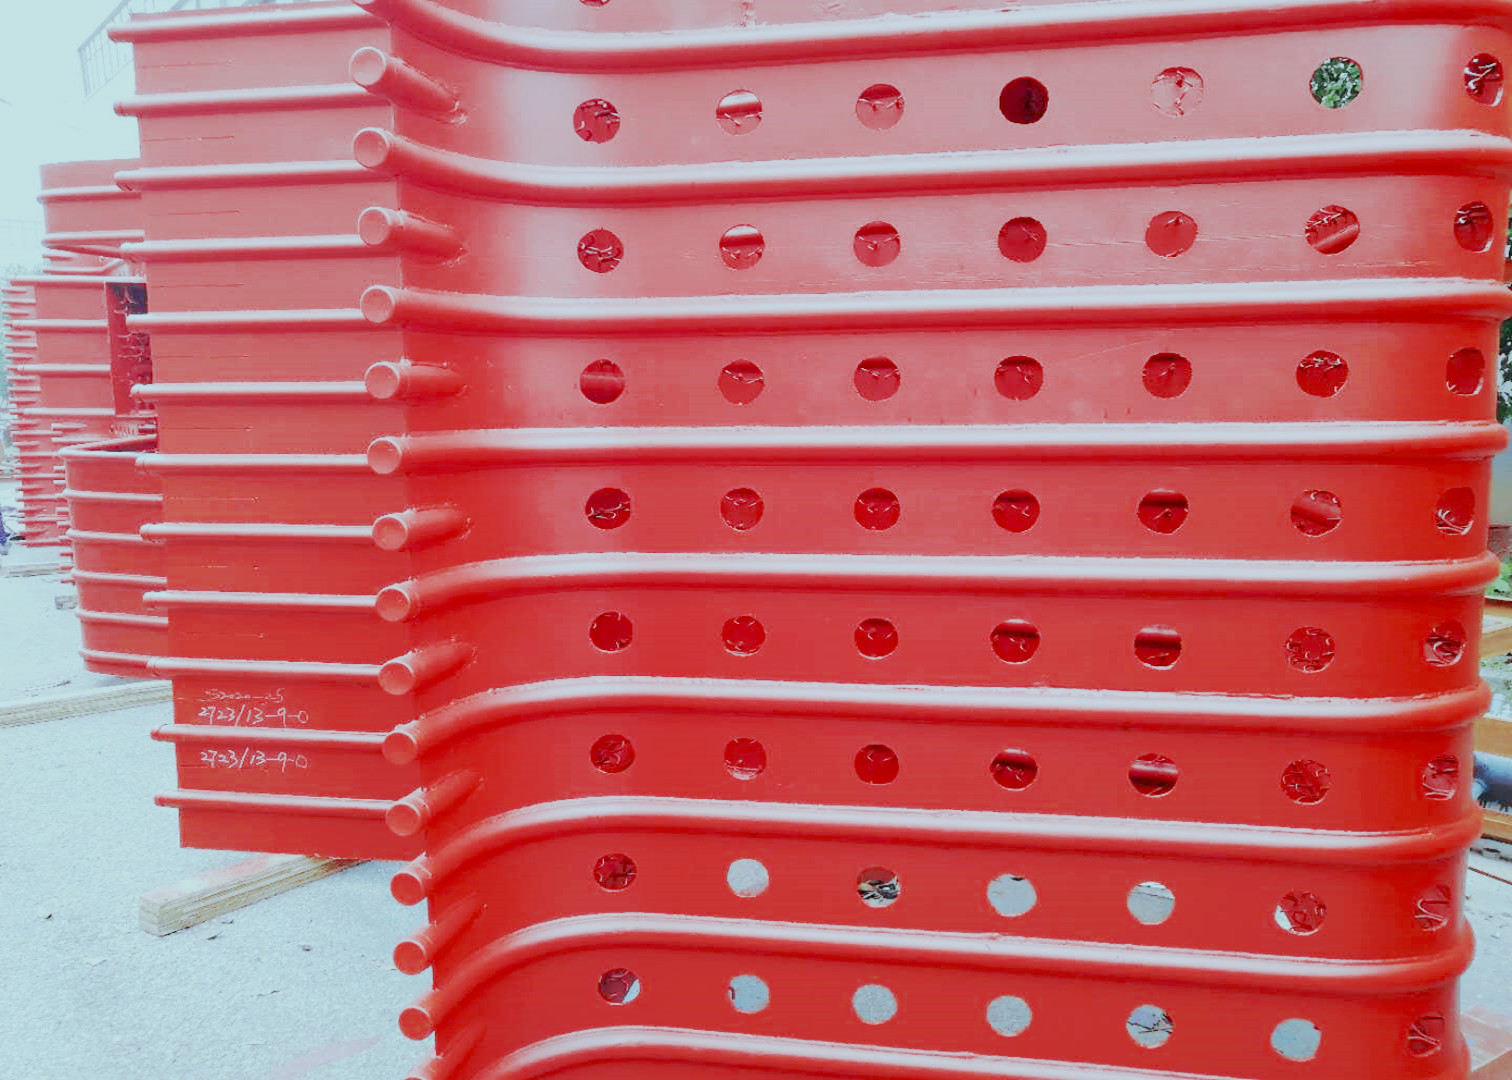 قطعات دیگ بخار فولاد کربن / فولاد ضد زنگ پانل دیواری آب دیگ بخار برای دیگهای بخار CFB